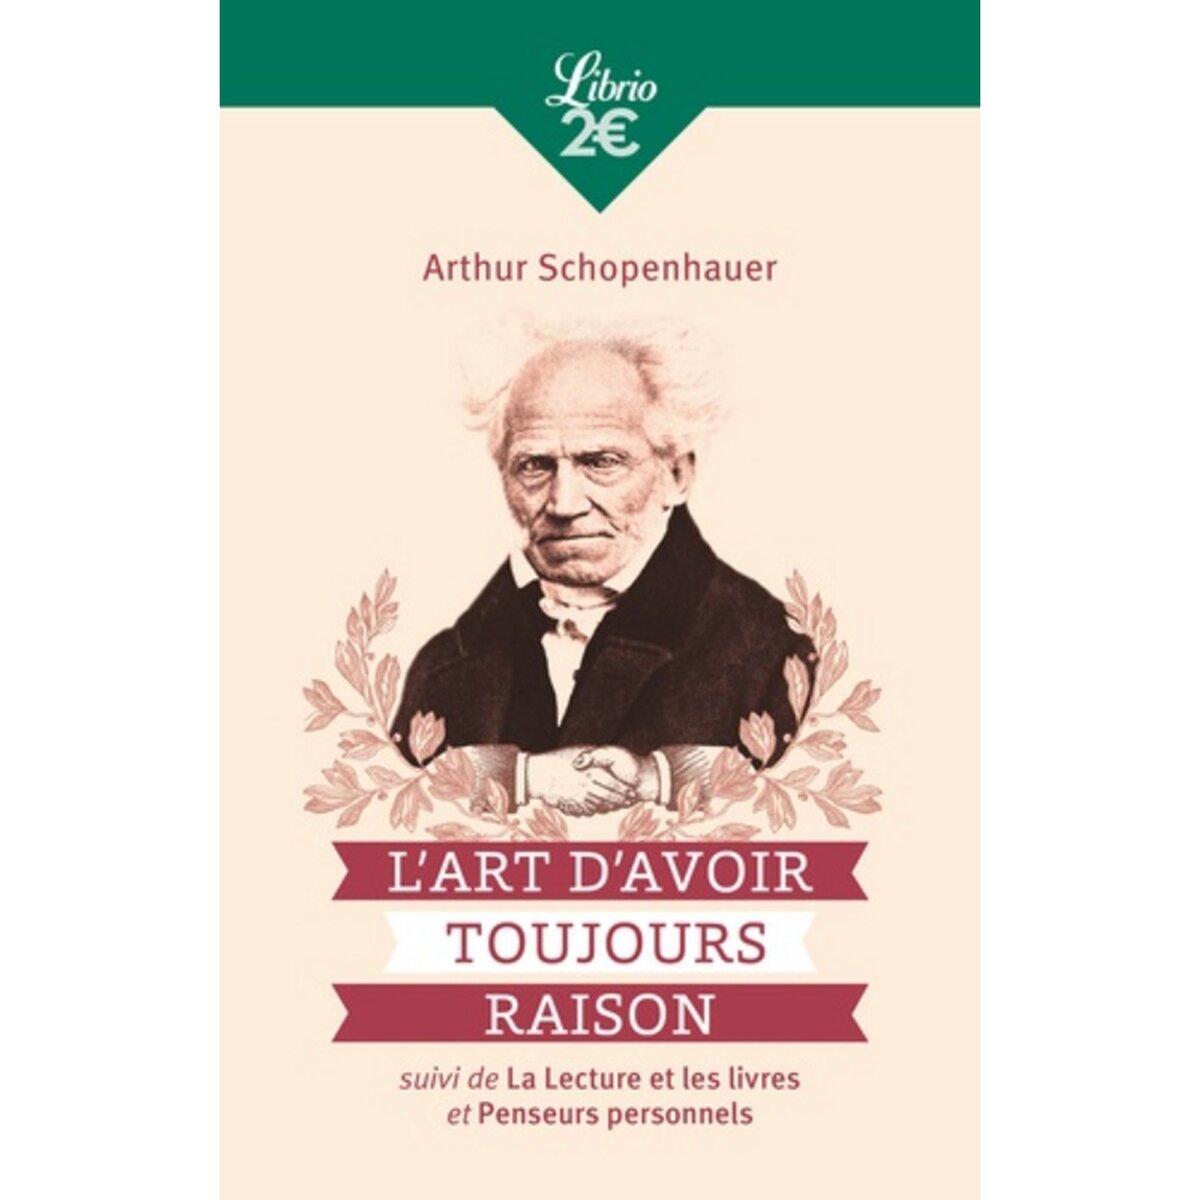  L'ART D'AVOIR TOUJOURS RAISON. SUIVI DE LA LECTURE ET LES LIVRES ET PENSEURS PERSONNELS, Schopenhauer Arthur